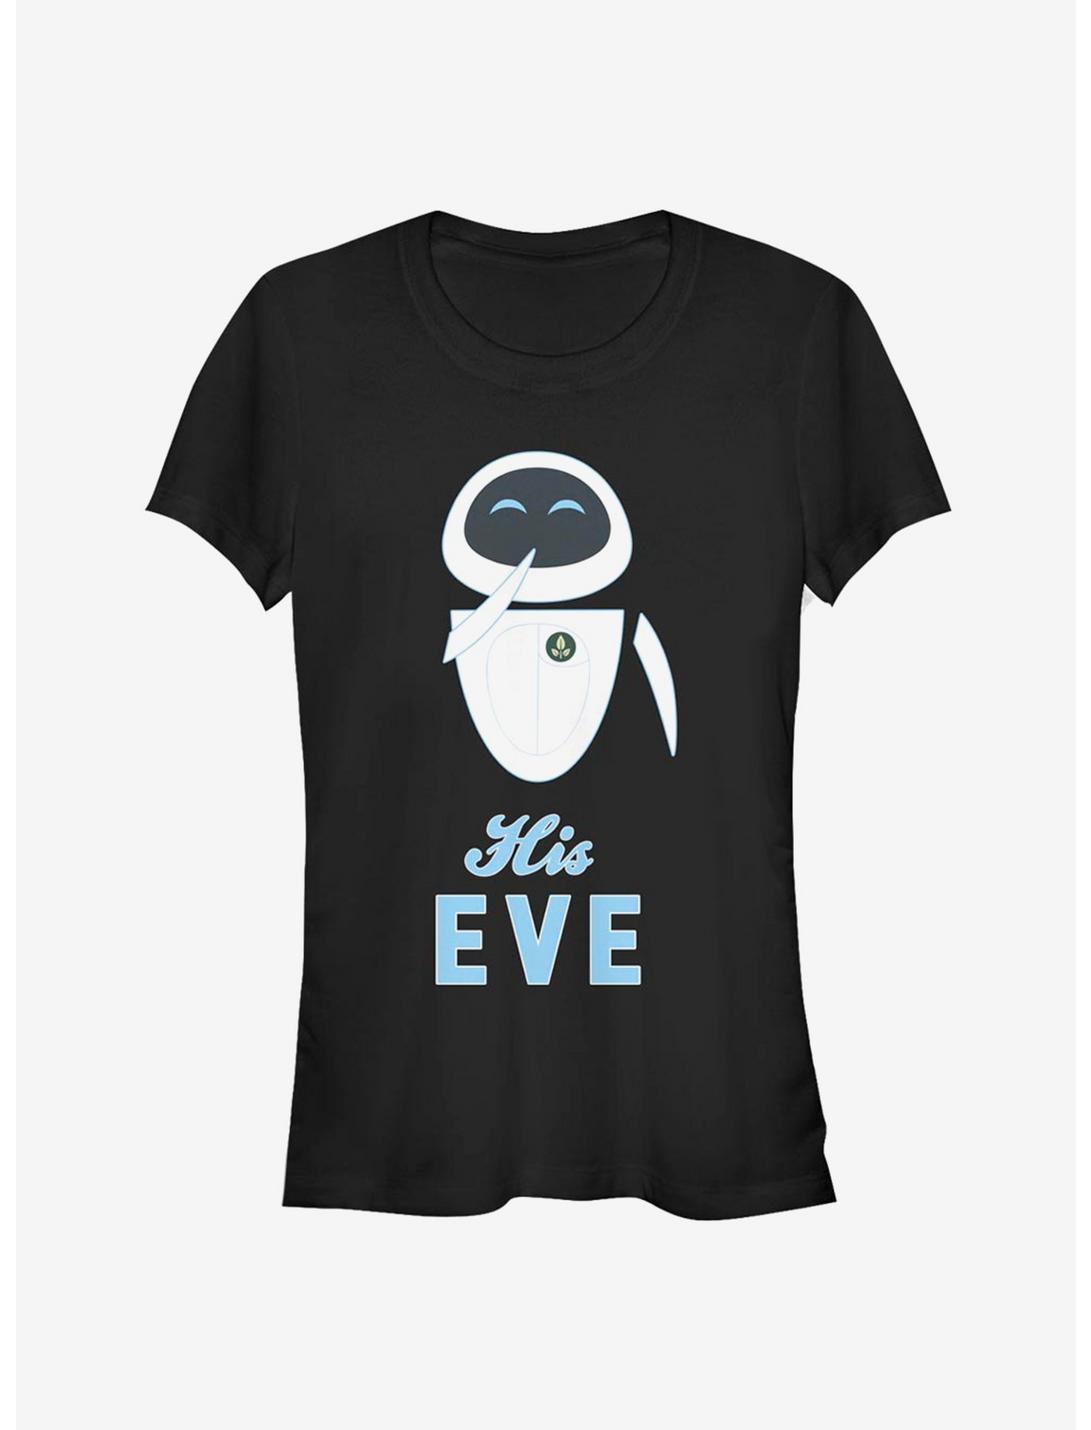 Disney Pixar Wall-E His Eve Girls T-Shirt, BLACK, hi-res